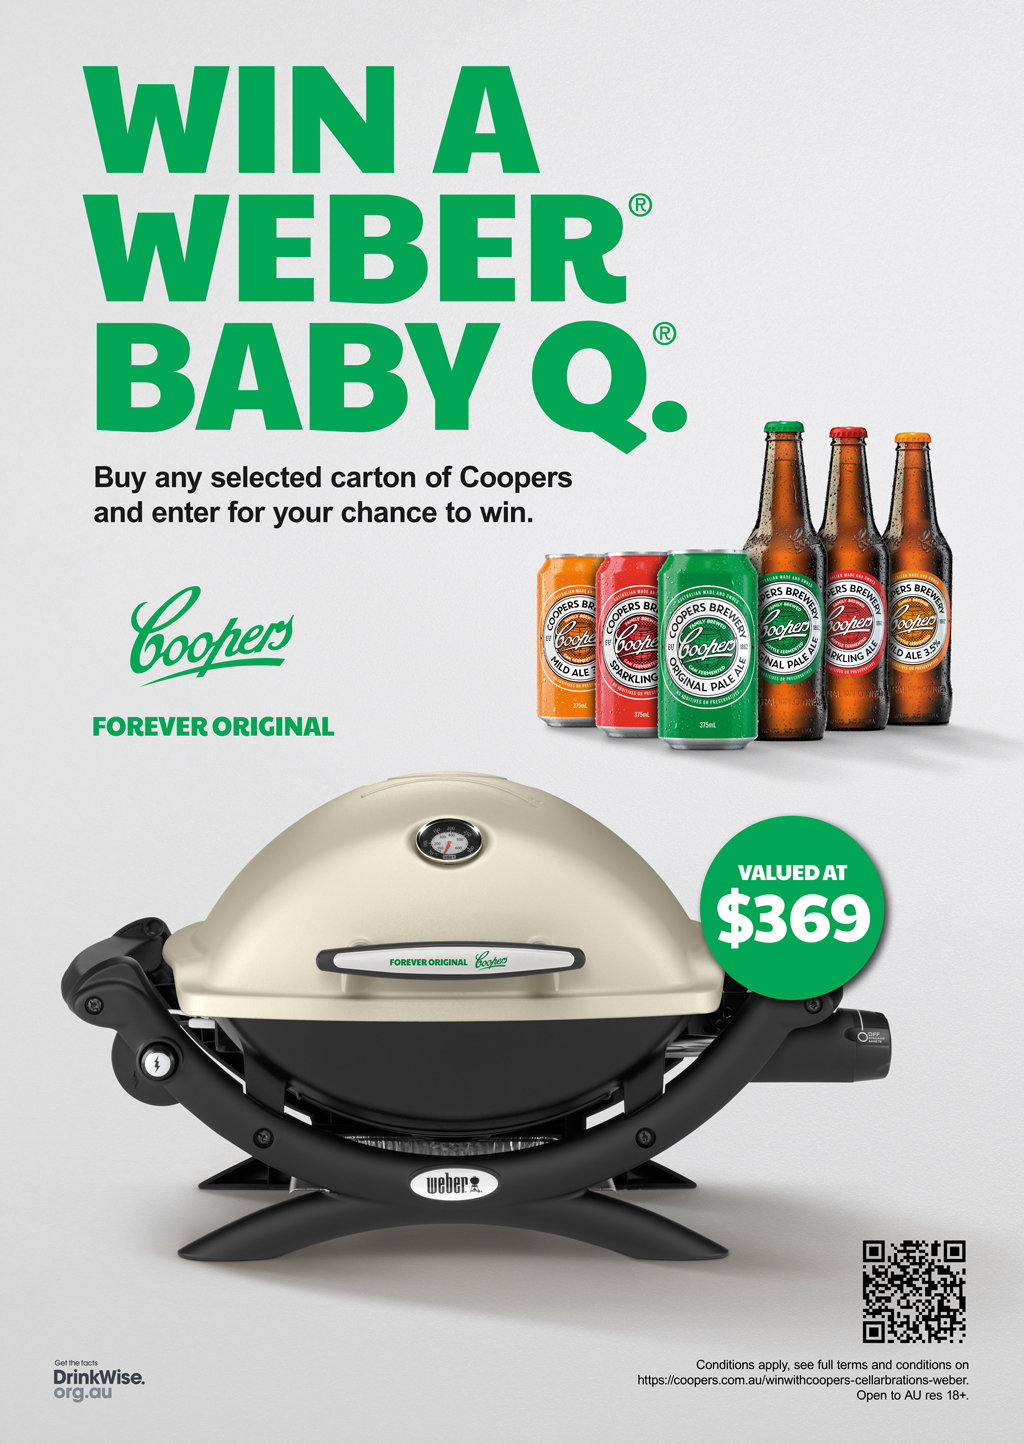 Win a Weber Baby Q